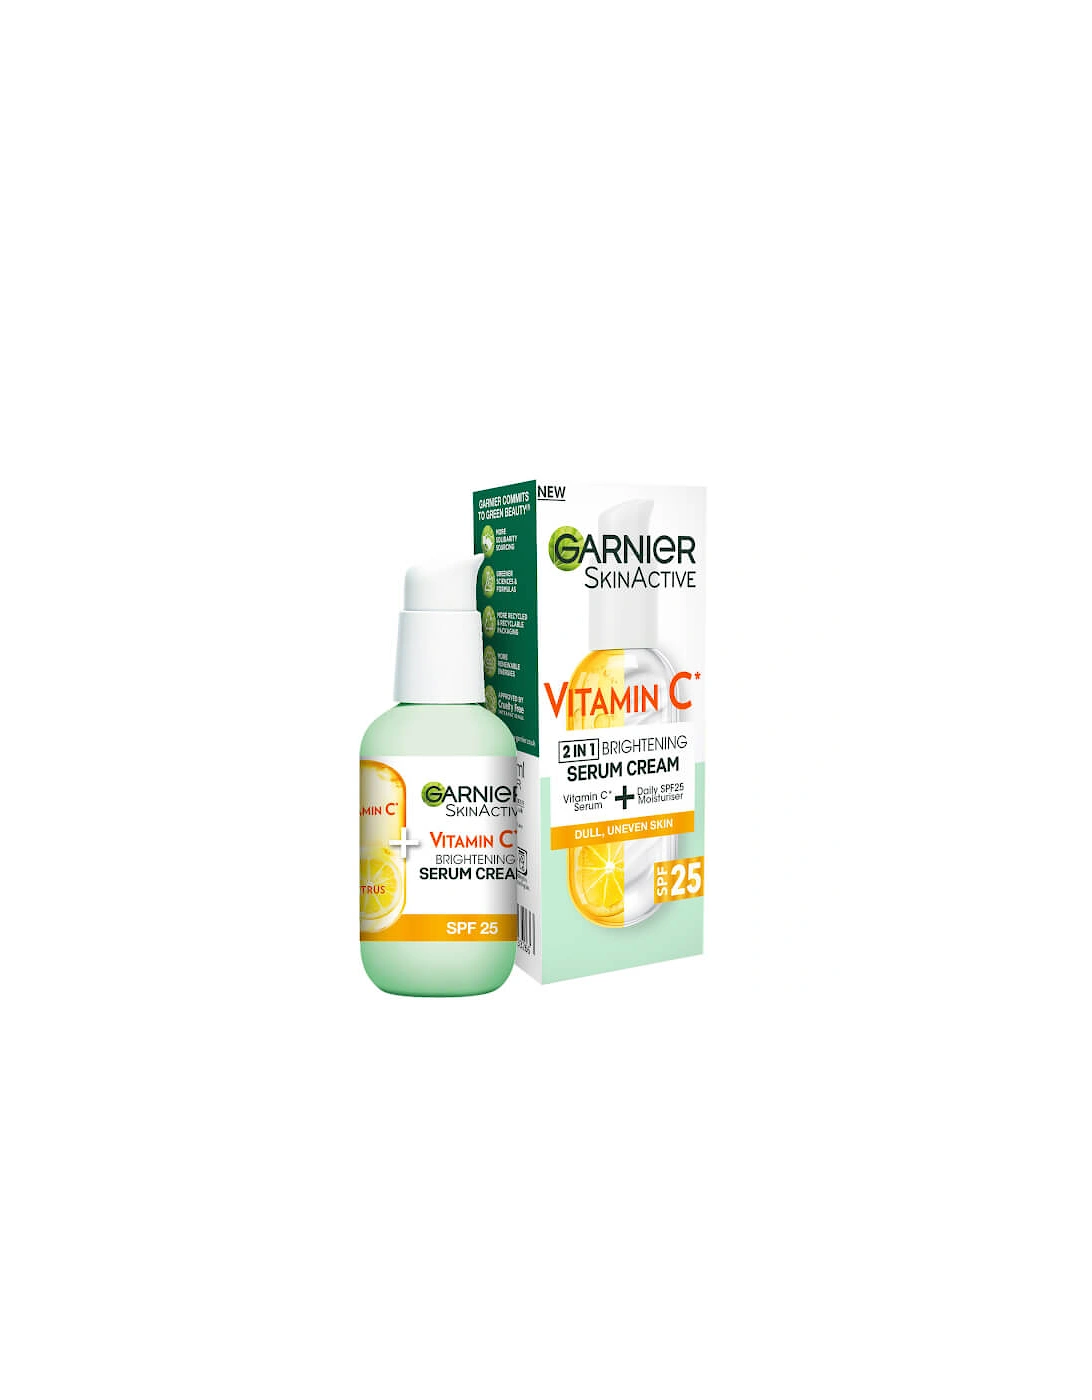 Vitamin C Serum Cream with 20% Vitamin C and SPF25 50ml - Garnier, 2 of 1